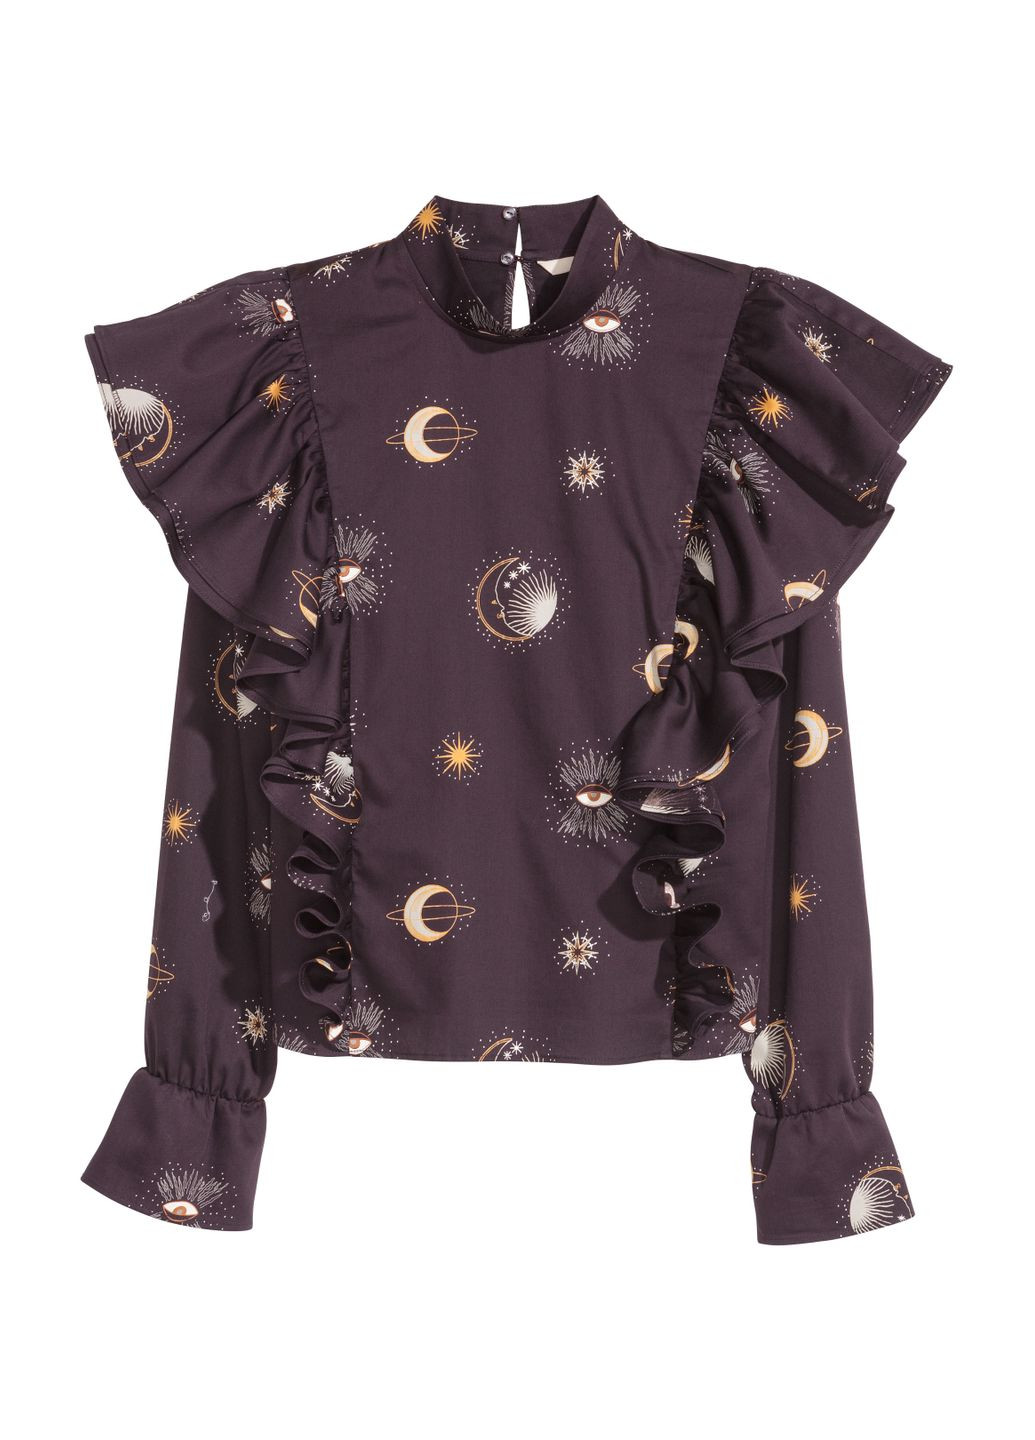 Фиолетовая блуза демисезон,фиолетовый в узоры, H&M